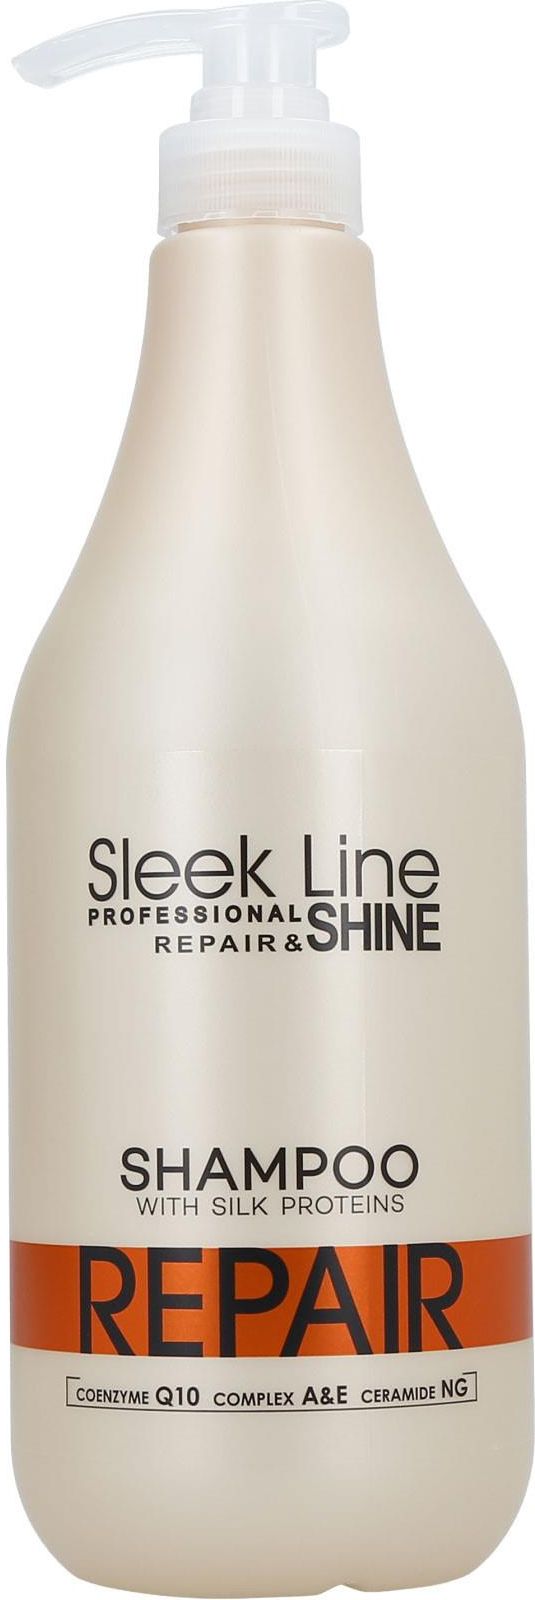 sleek line szampon do włosów ciemnych